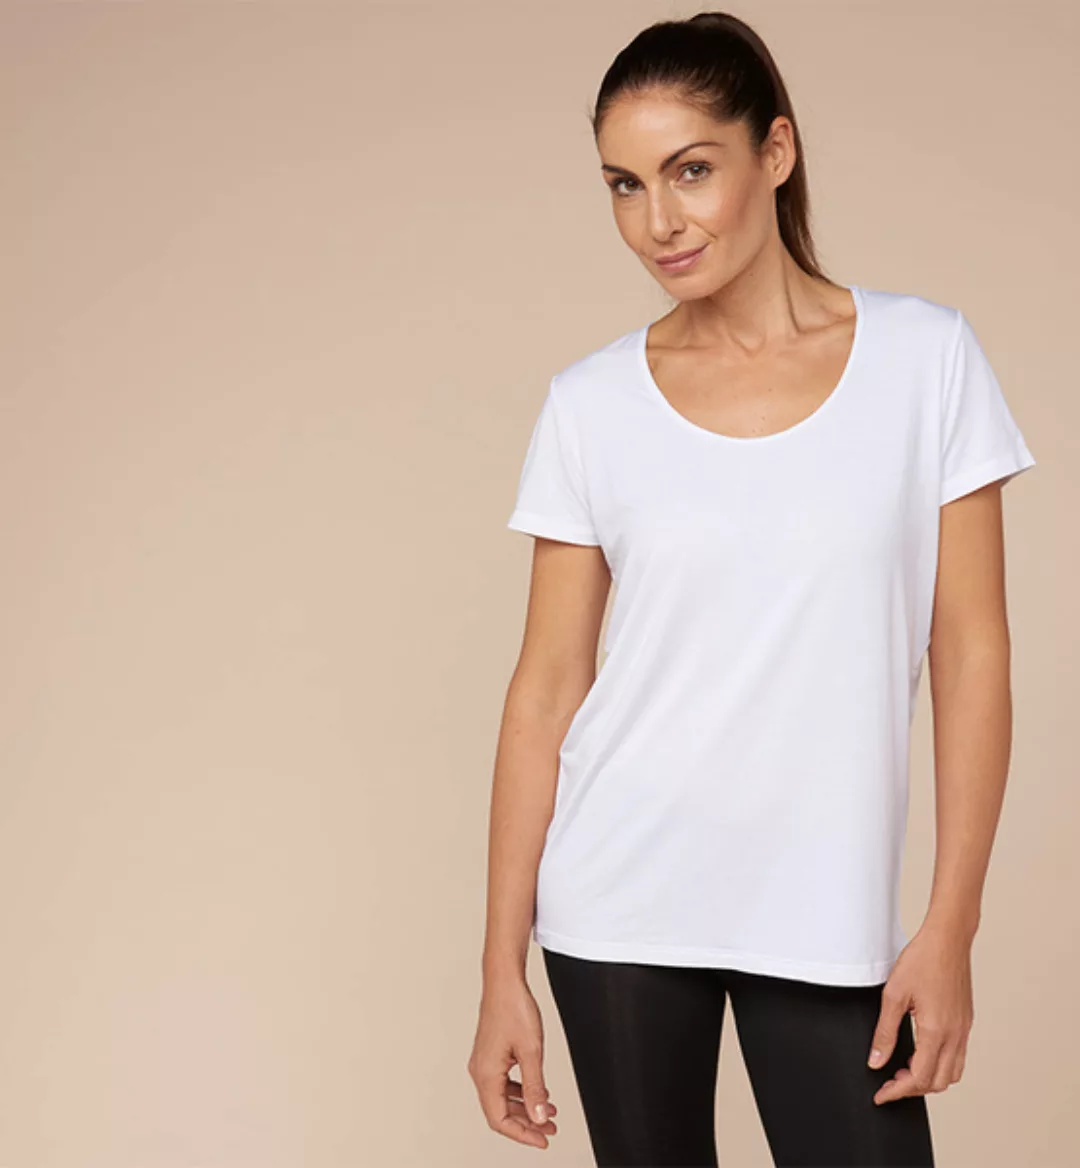 Damen-t-shirt Aus Ökologischer Pflanzenfaser günstig online kaufen